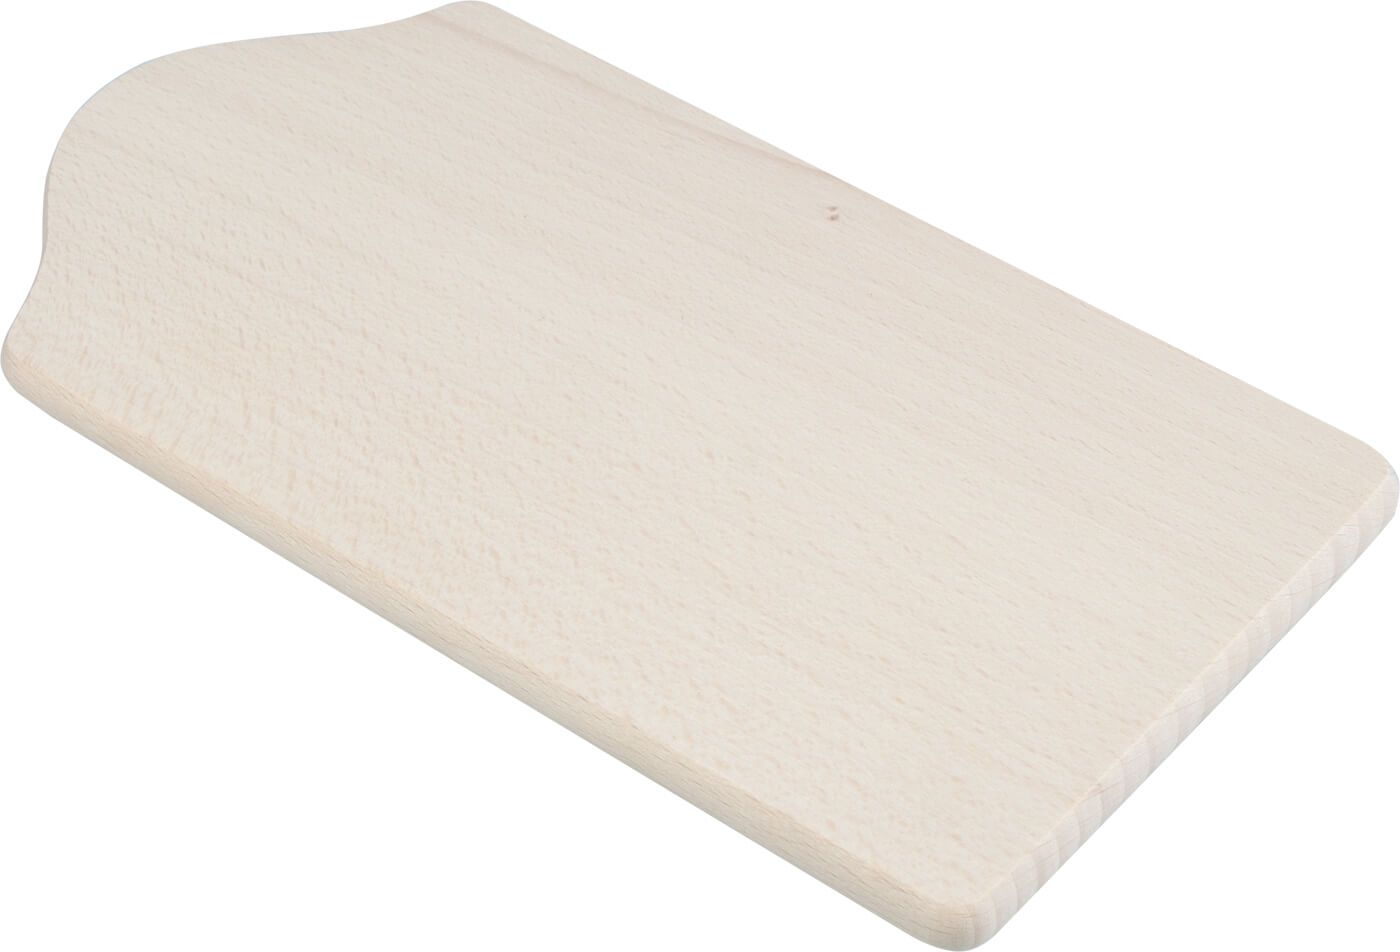 Wooden board, beech wood - 22x12cm